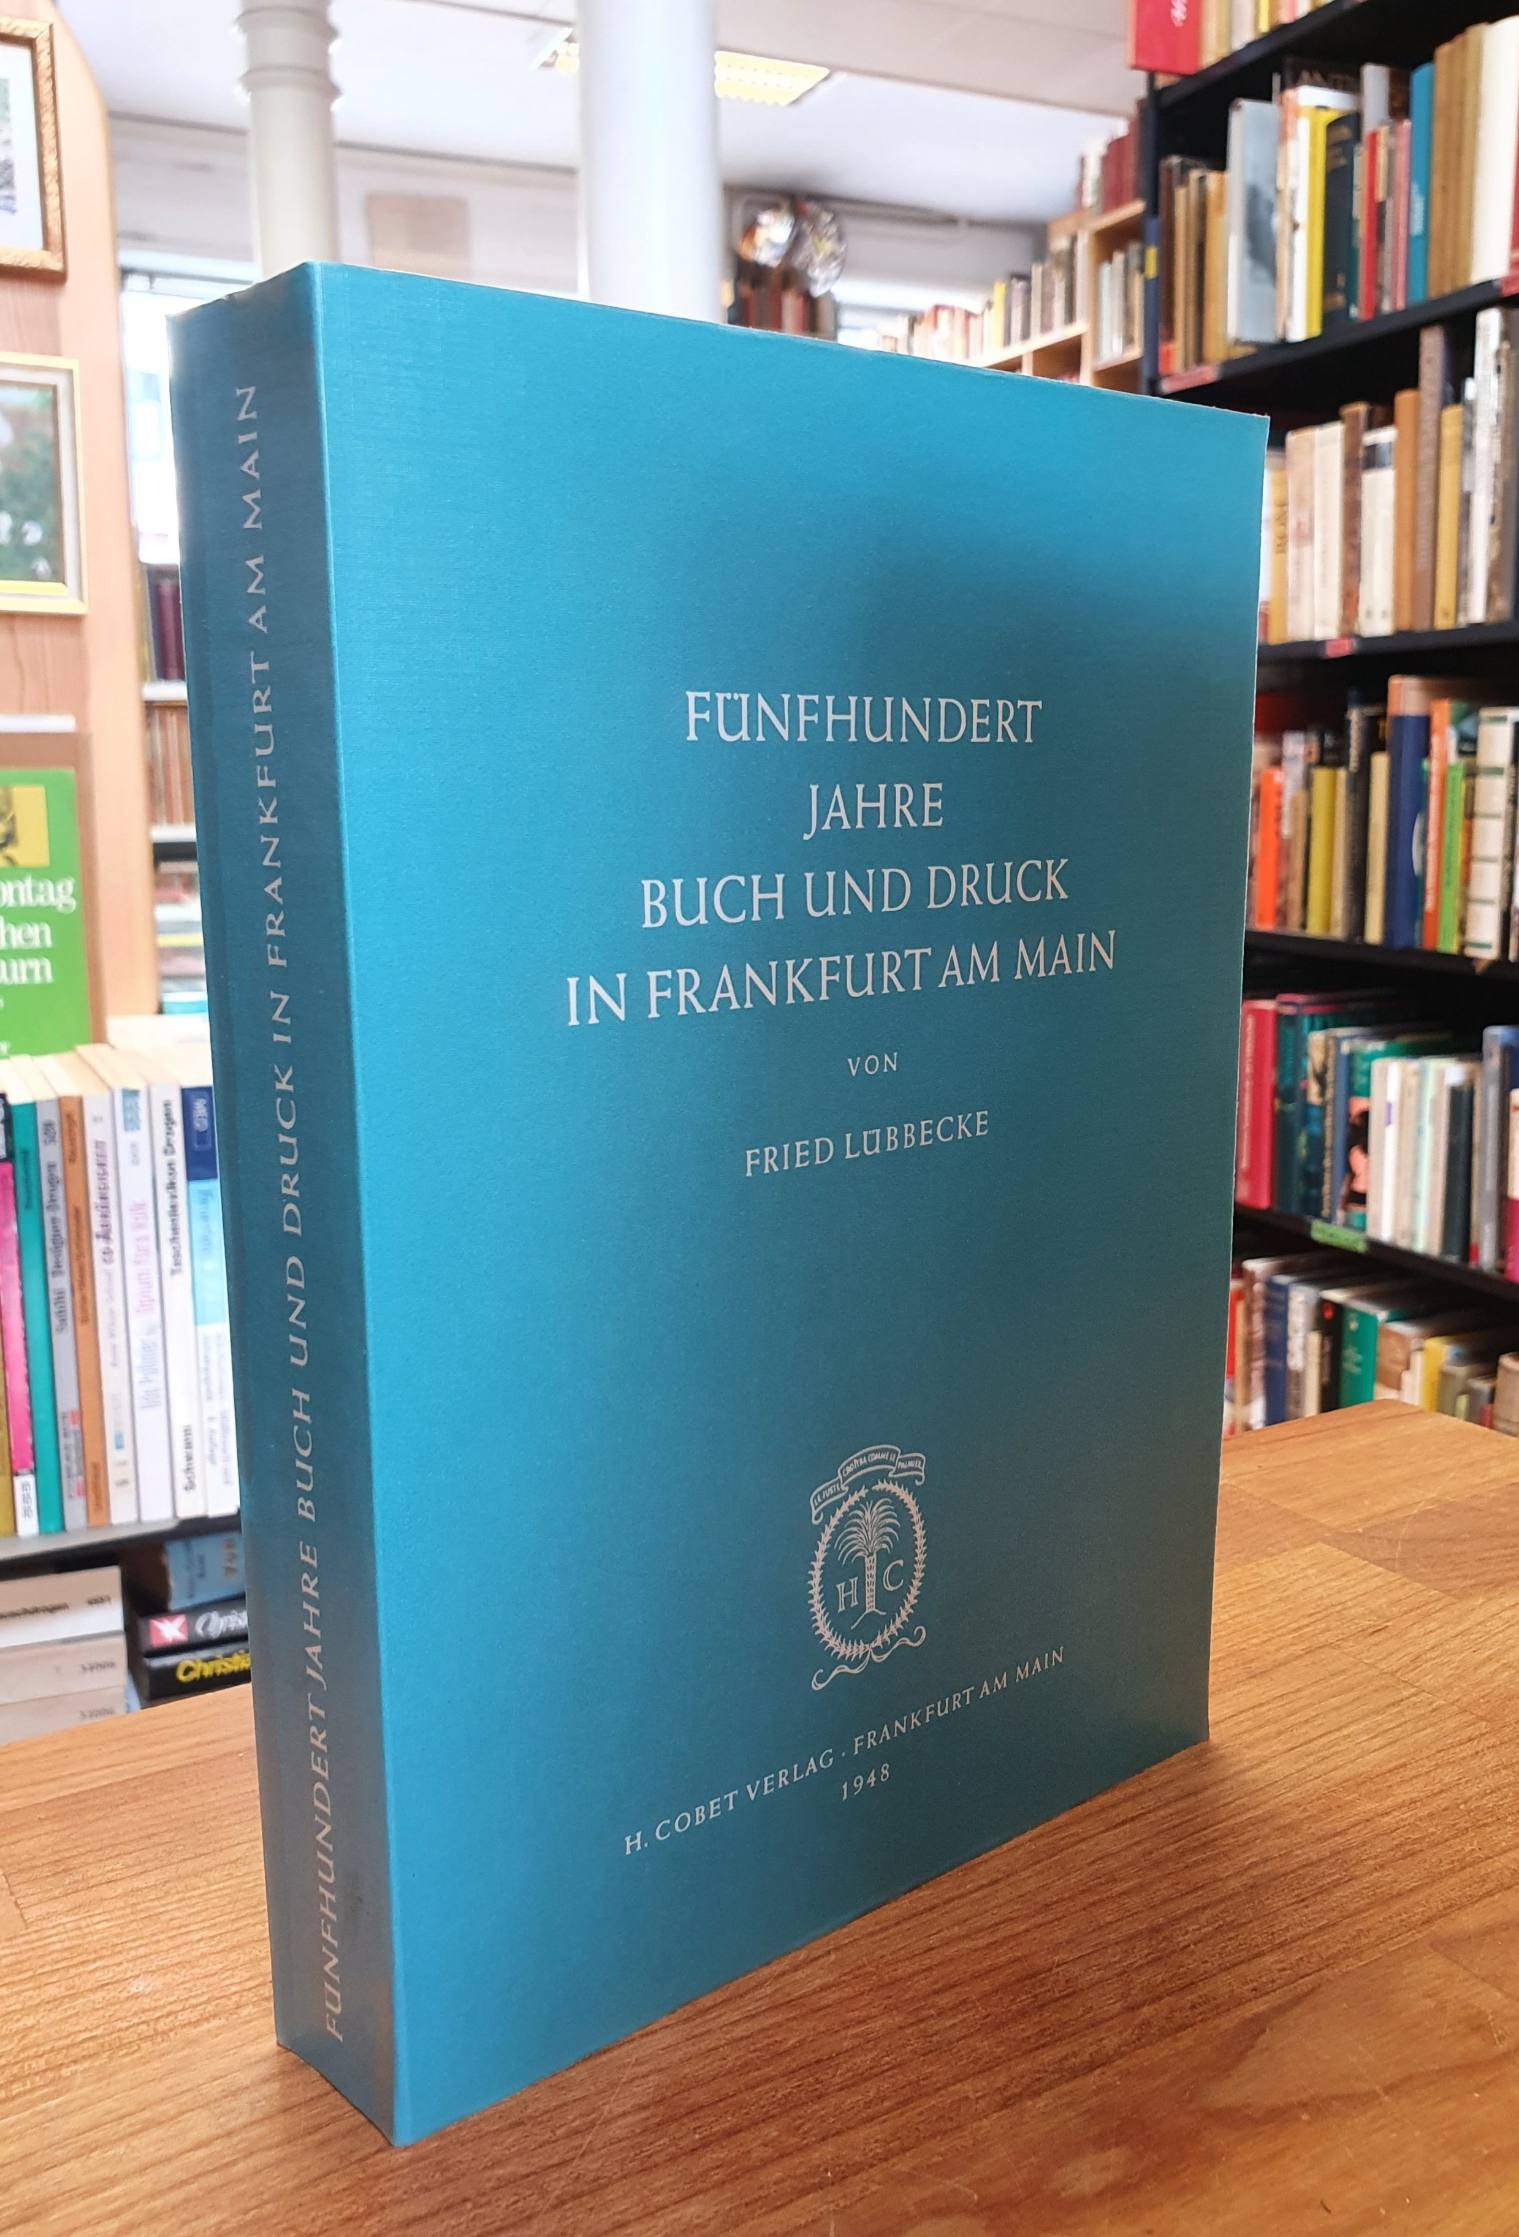 Lübbecke, Fünfhundert [500] Jahre Buch und Druck in Frankfurt am Main,